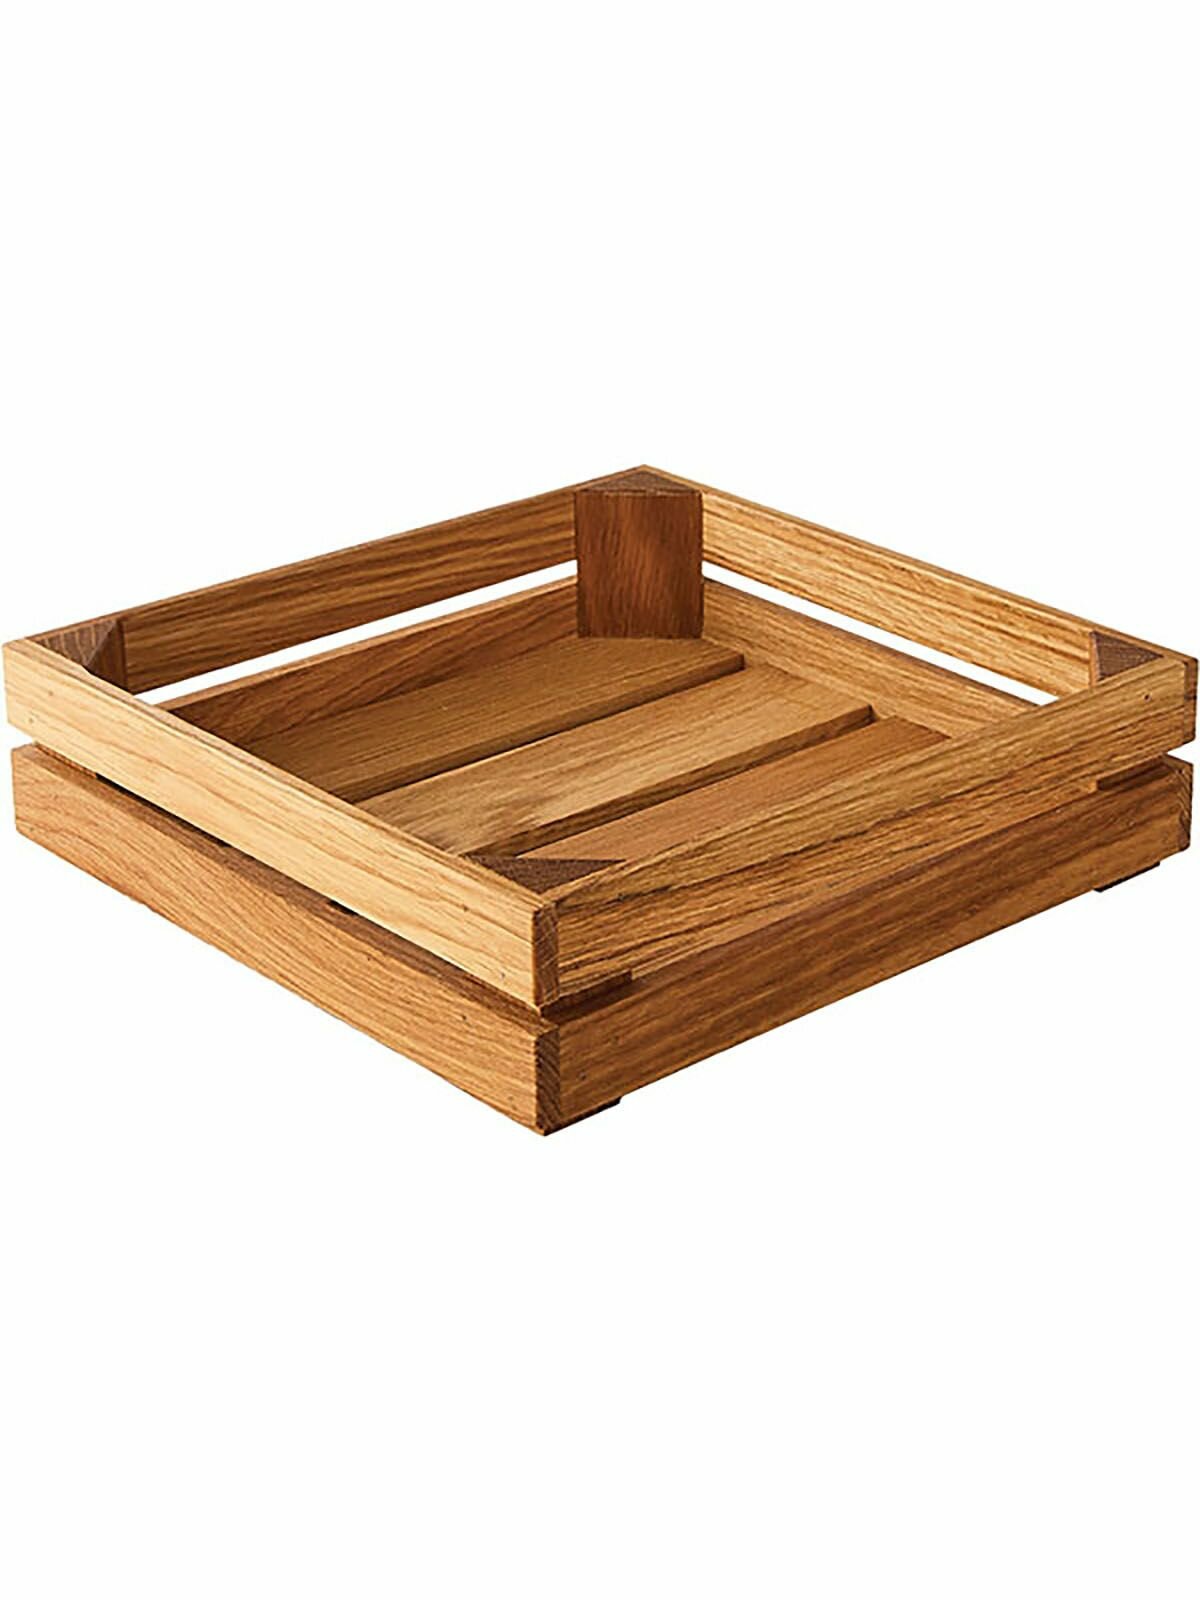 Ящик для подачи PPwood, деревянный, 20x20 см